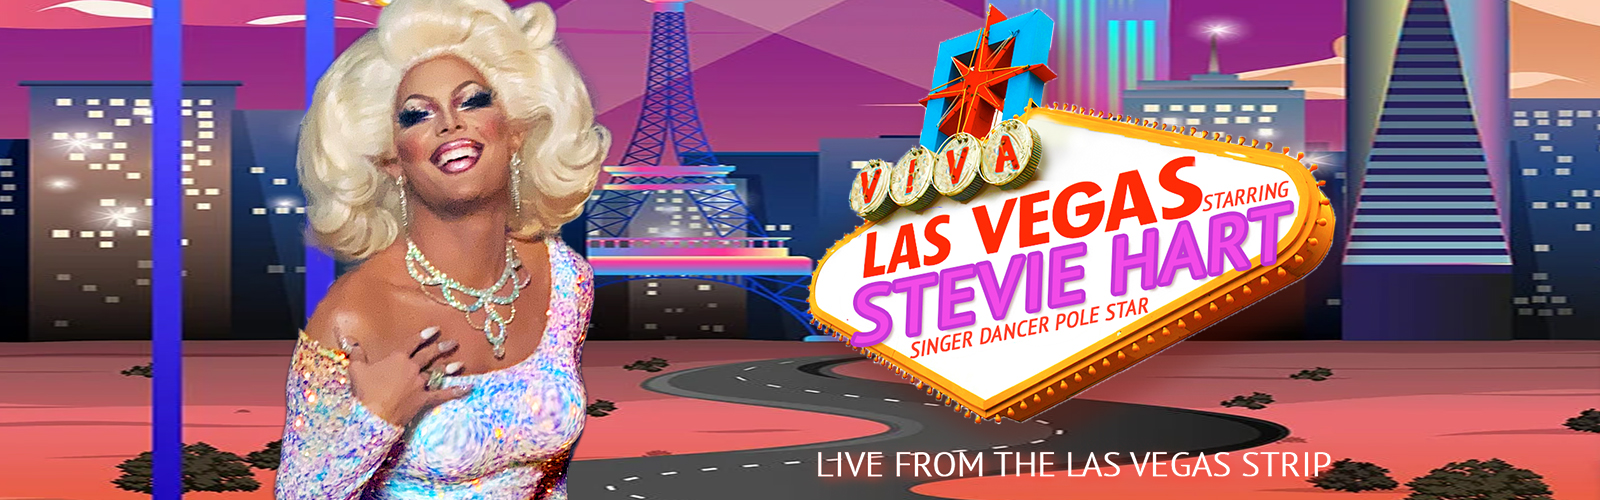 VIVA LAS VEGAS (Drag show starring Steven Retchless)